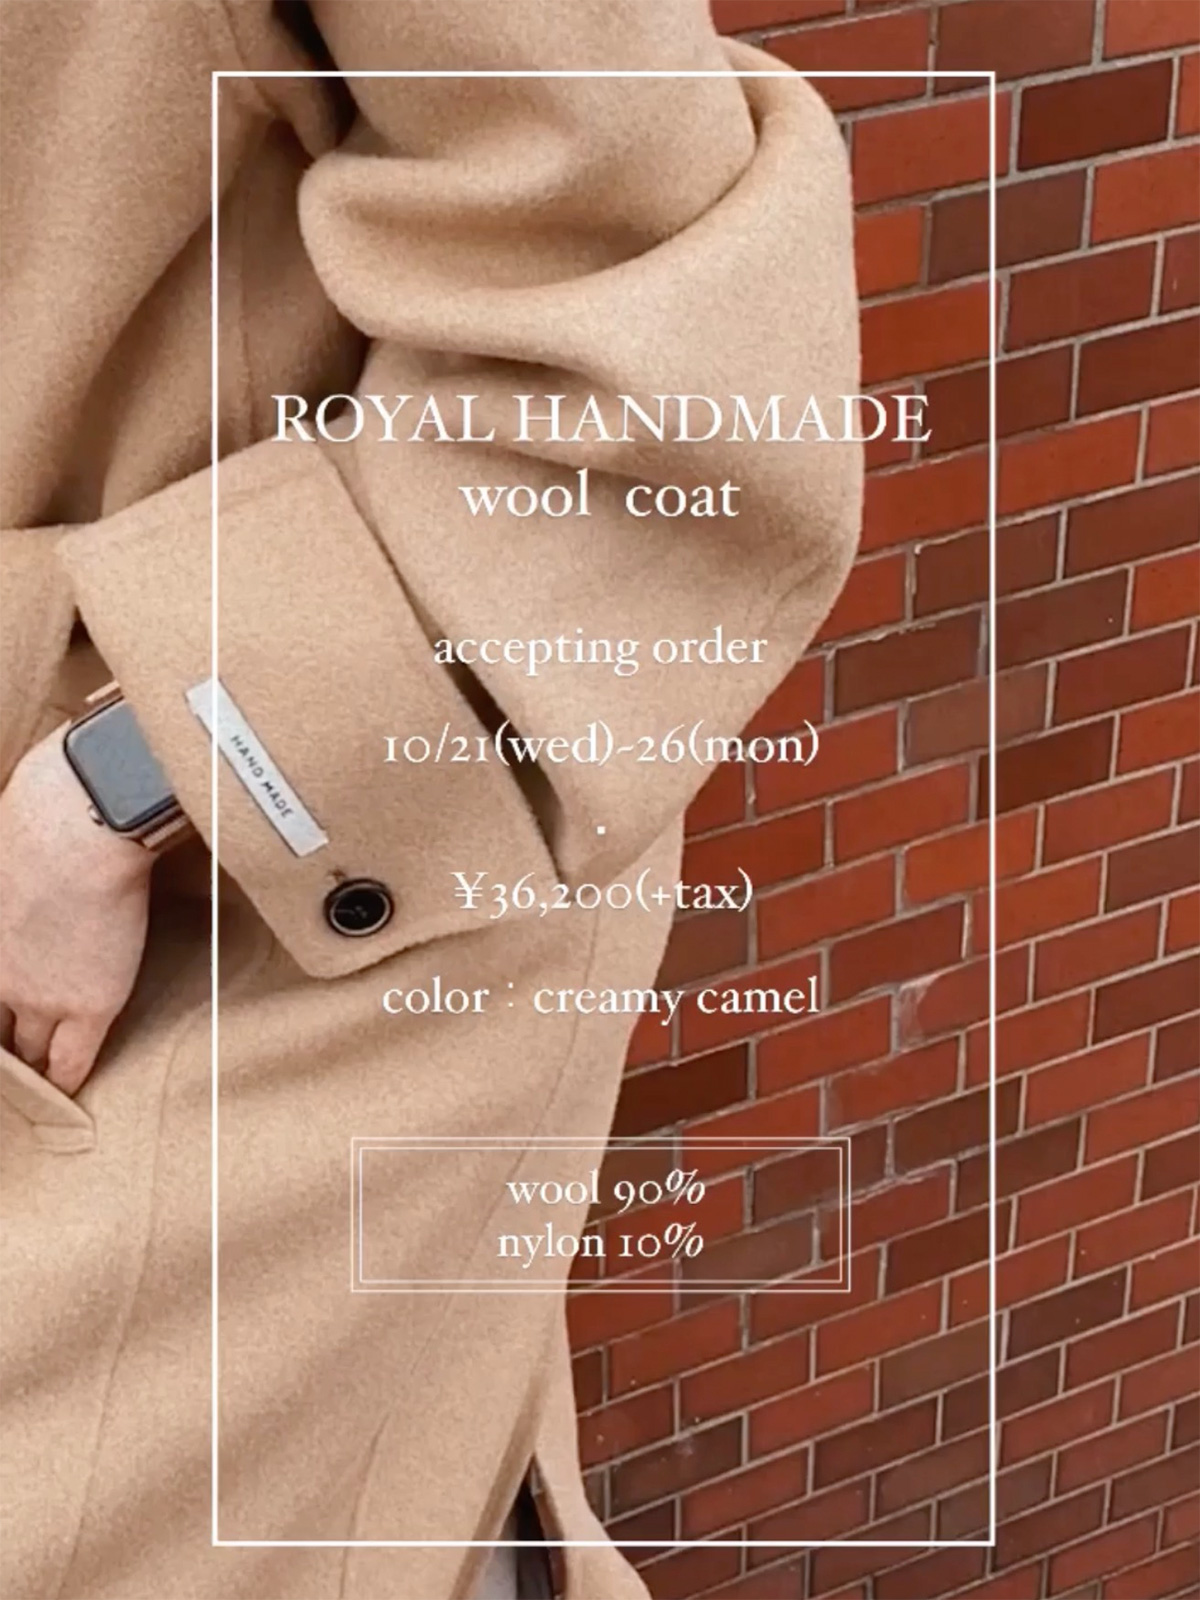 クン ROYAL handmade wool coat カラー: